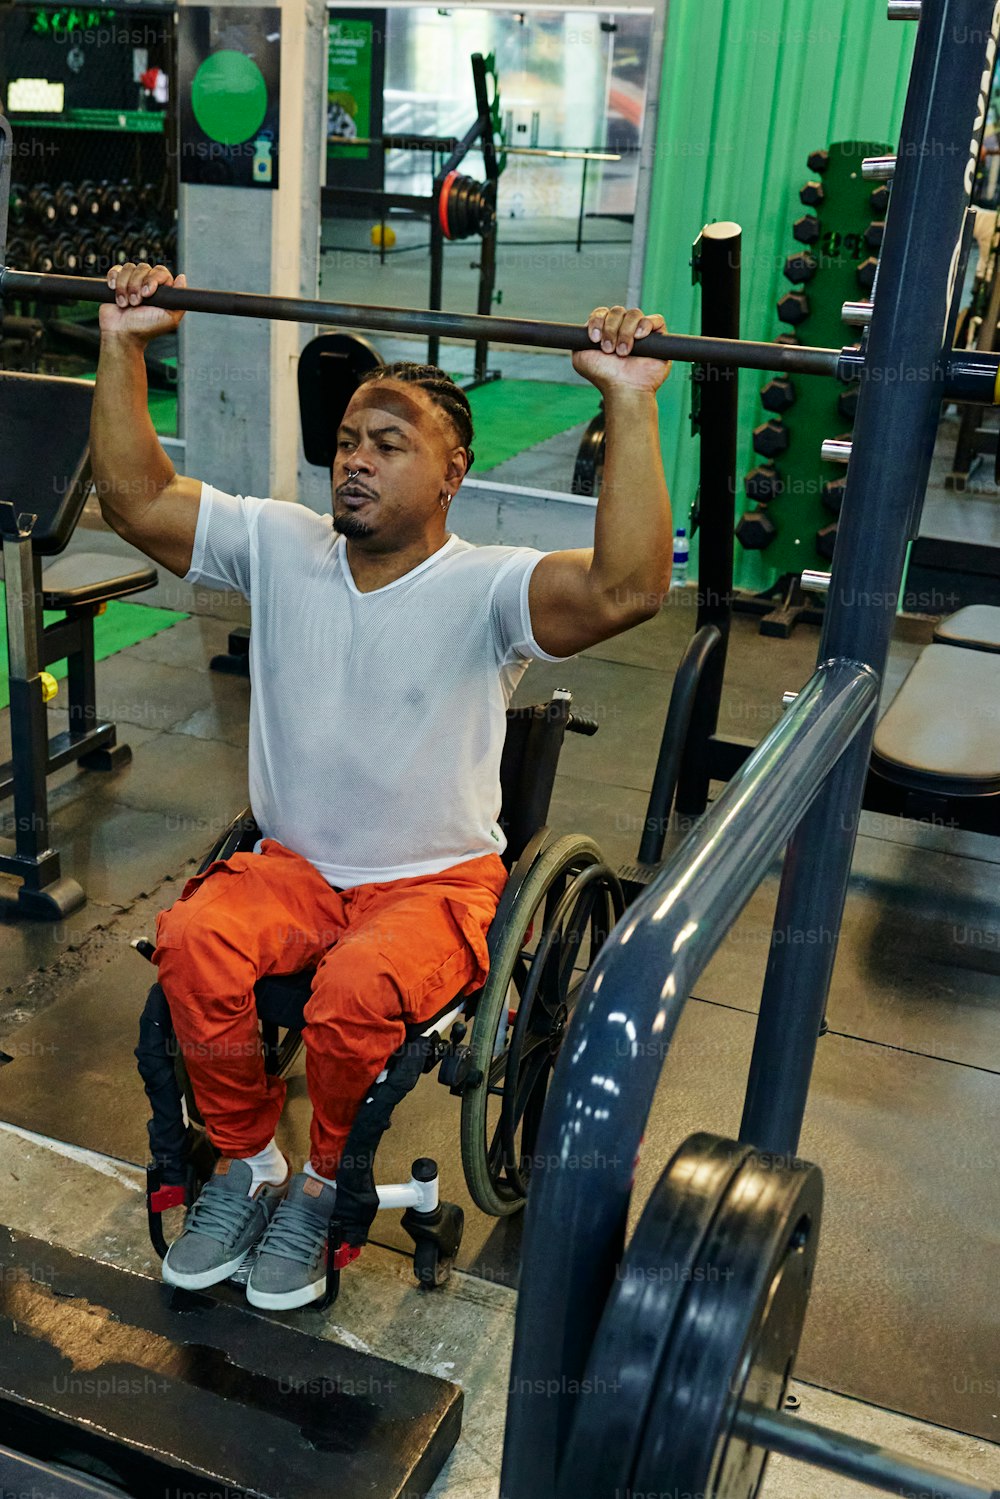 Ein Mann im Rollstuhl hebt eine Bar in einem Fitnessstudio